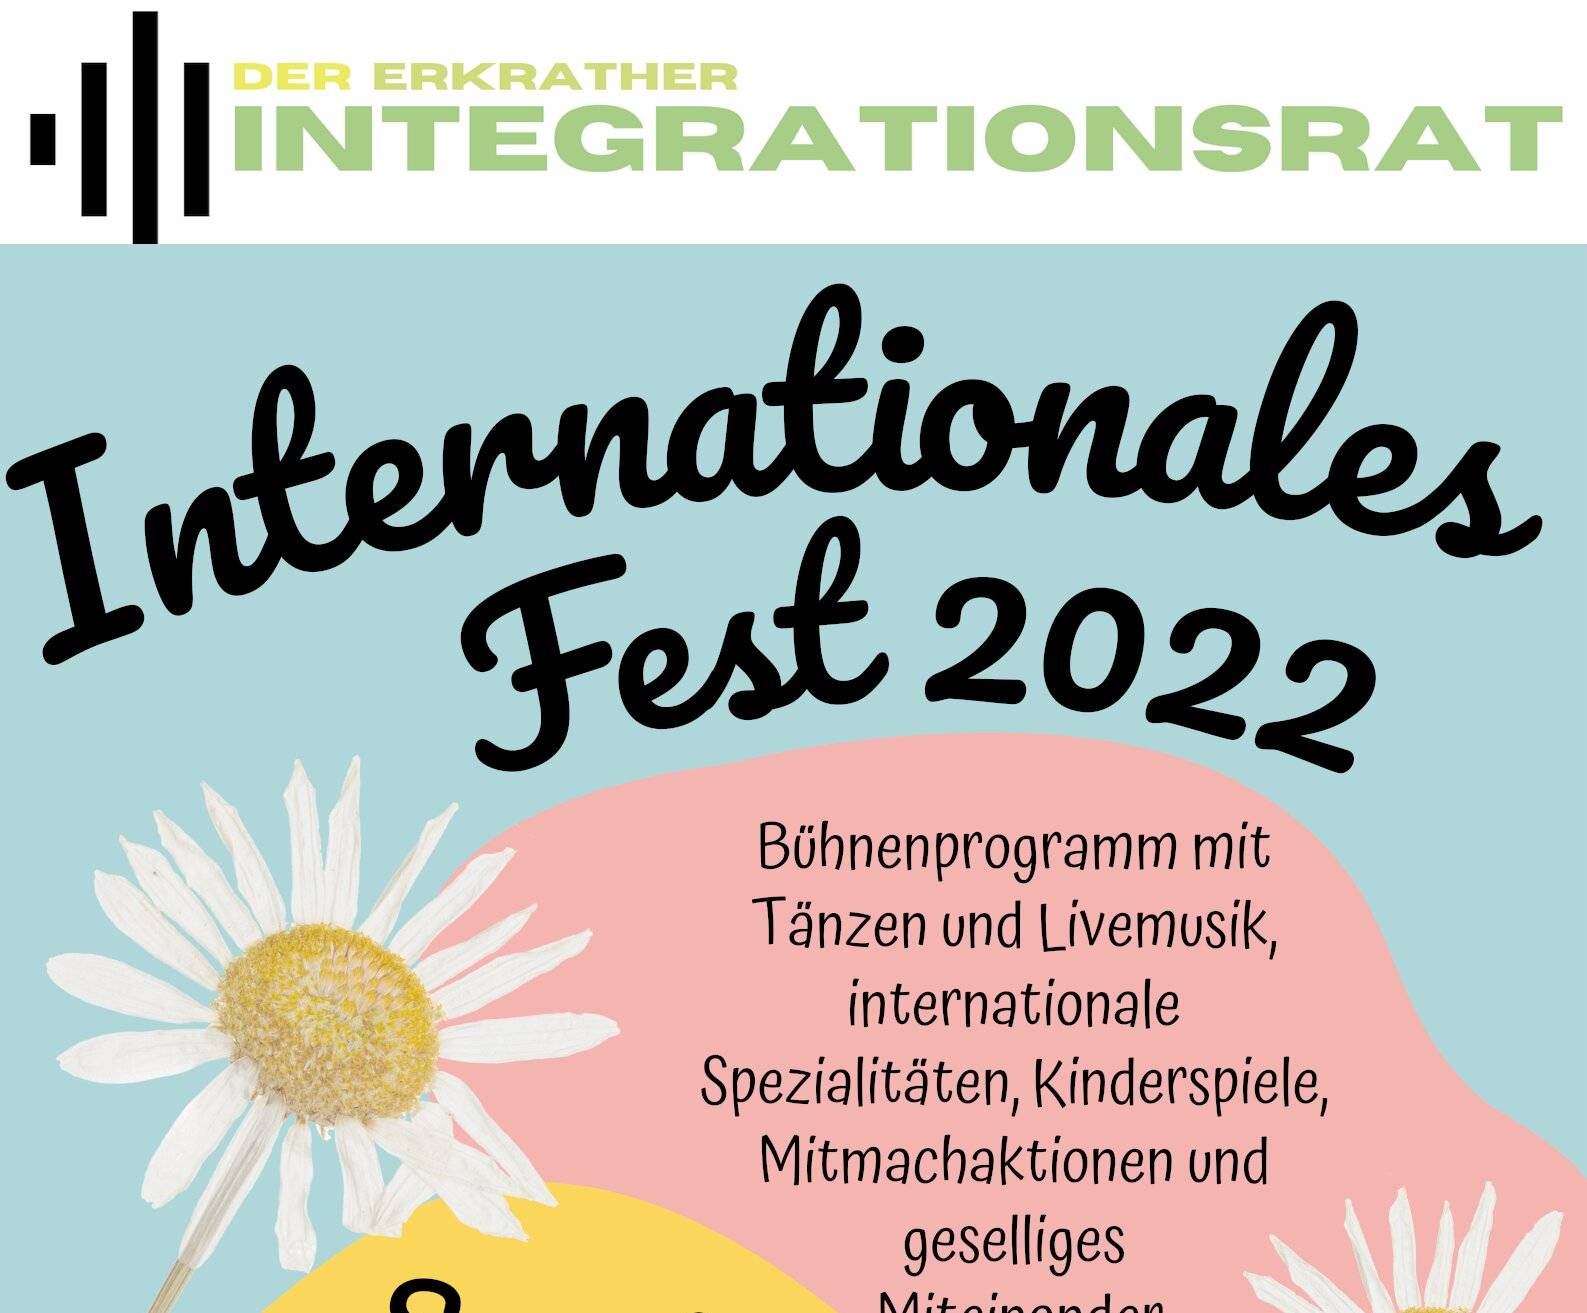 Veranstaltung am Baviercenter statt in Hochdahl:  Internationales Fest des Integrationsrates